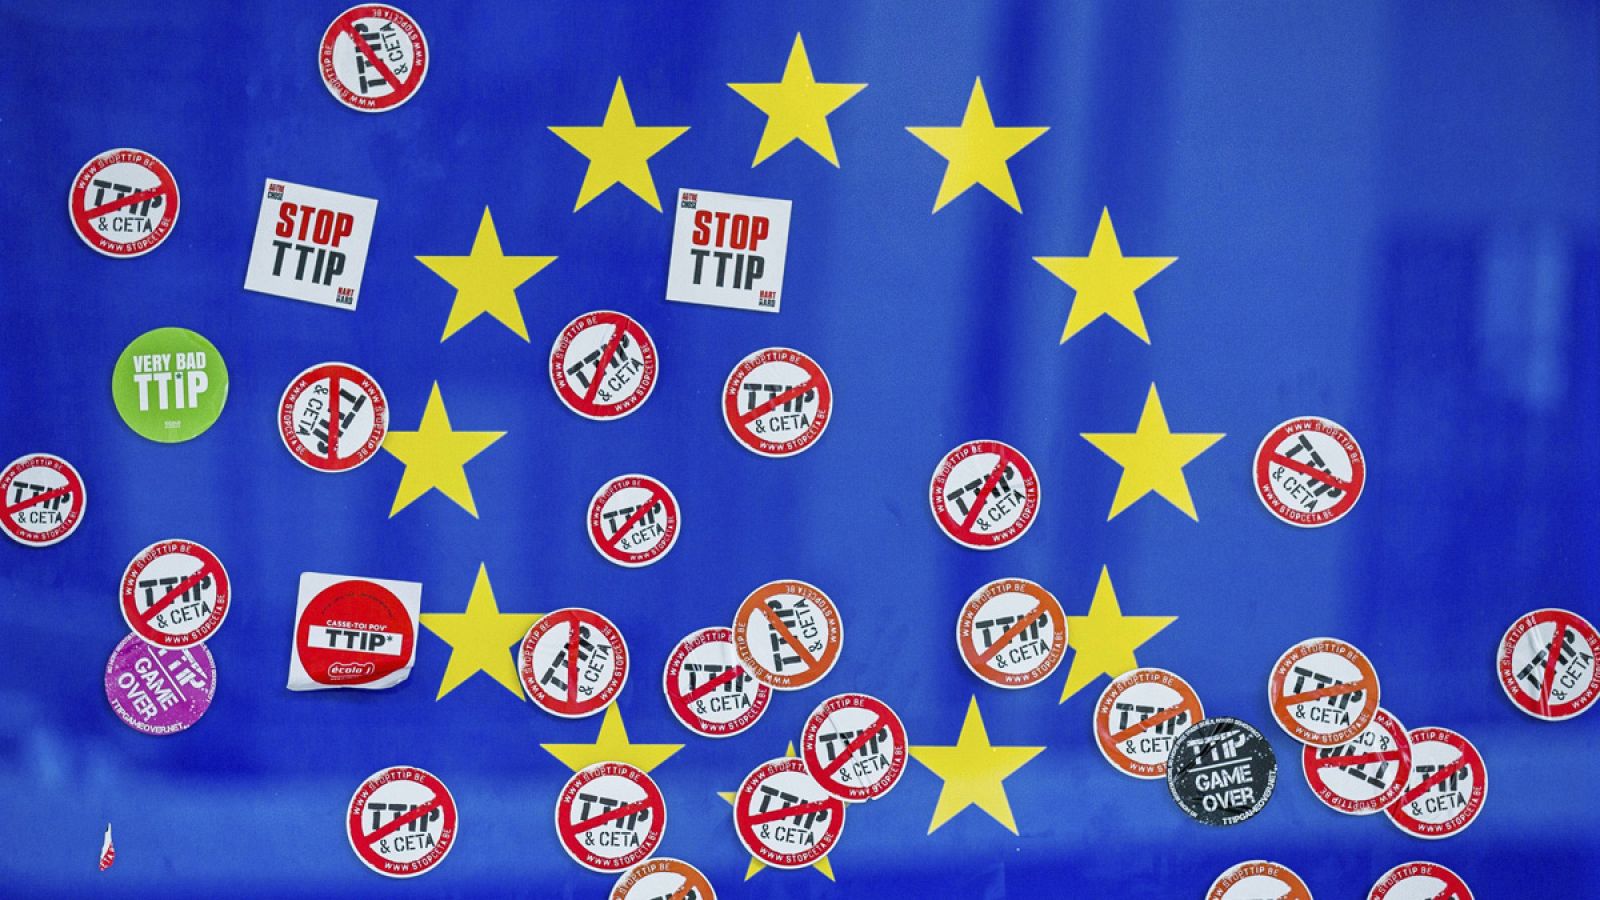 La bandera de la UE decorada con pegatinas contra el TTIP, en la sede de la Comisión Europea en Bruselas, Bélgica